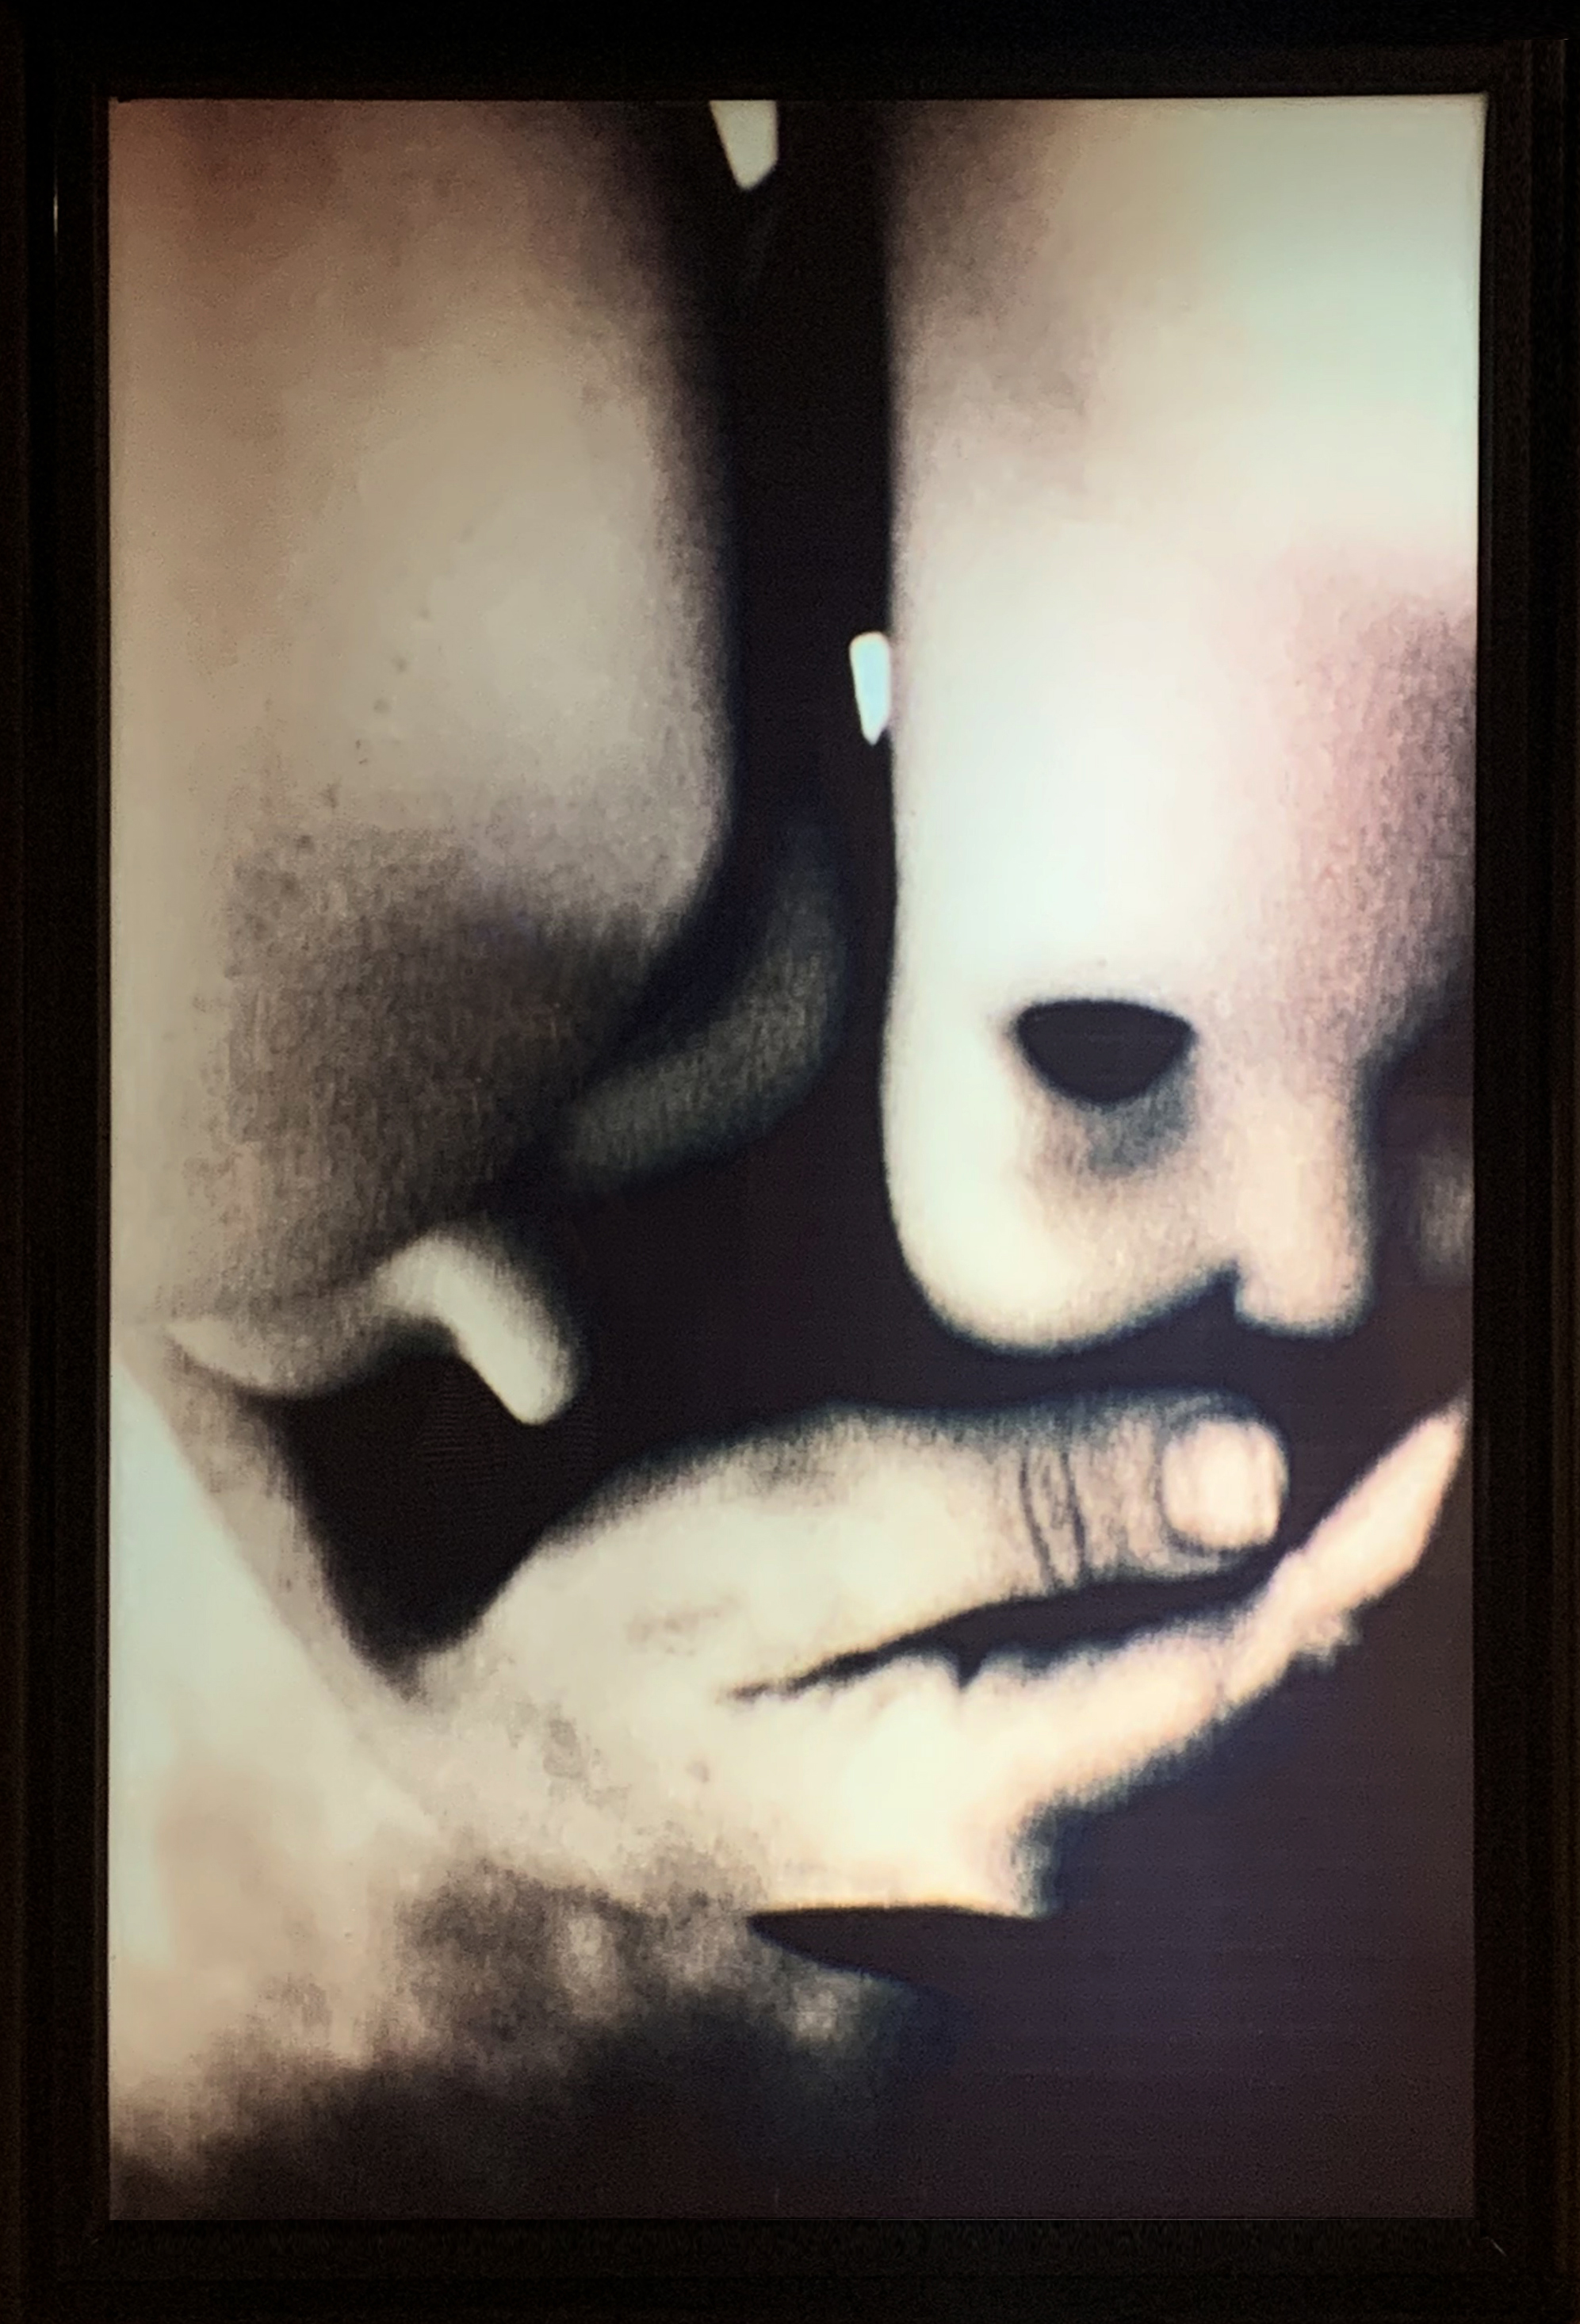 Marisa González. "Clónicos". 1993-97. 93 x 93 x 13 cm